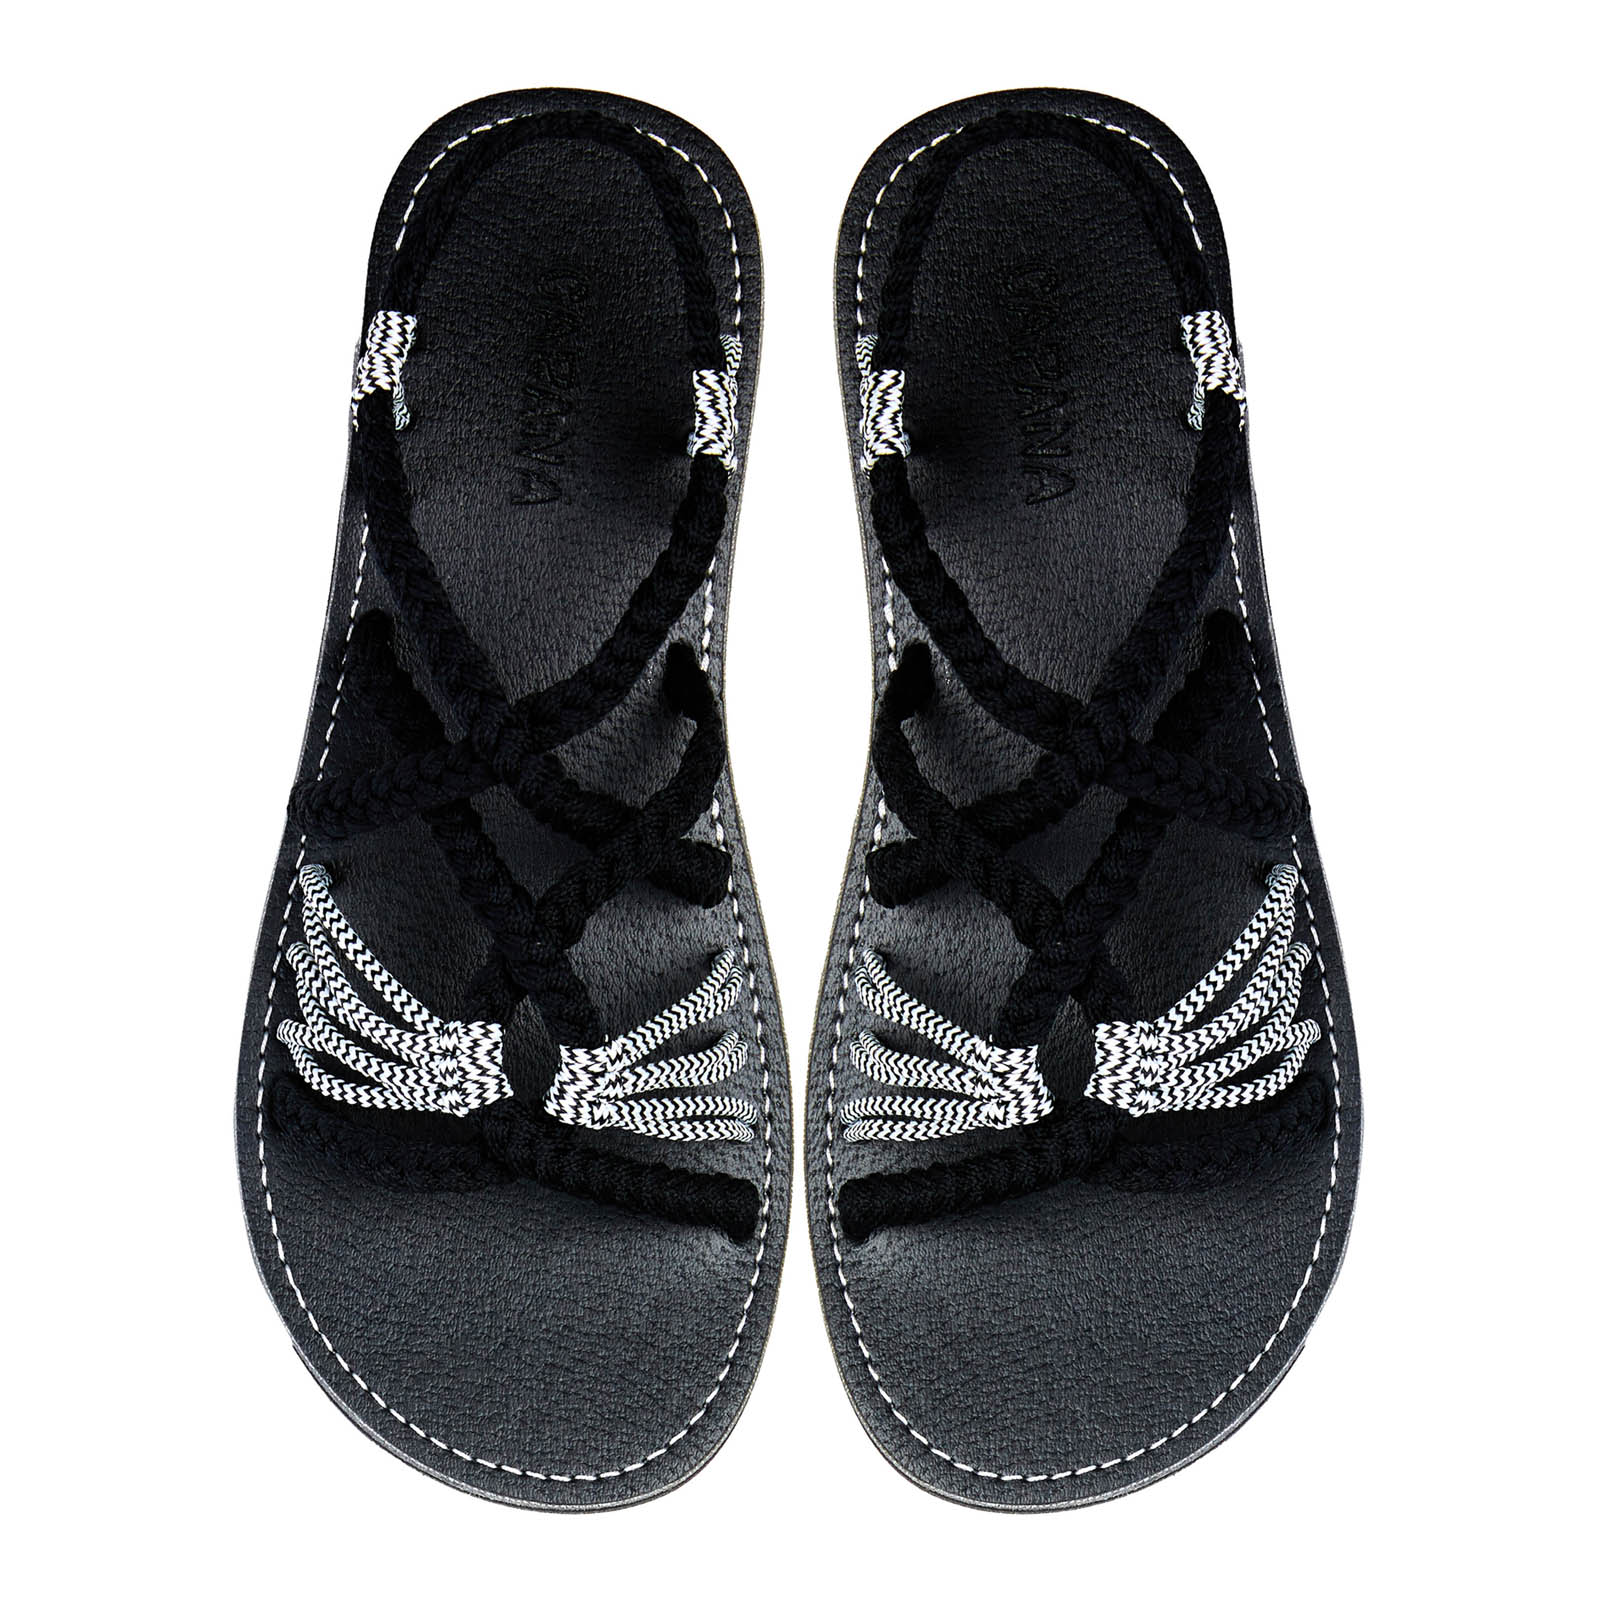 Relax Black Zebra Rope Sandals Black White Open toe wider design Flat Handmade sandals for women